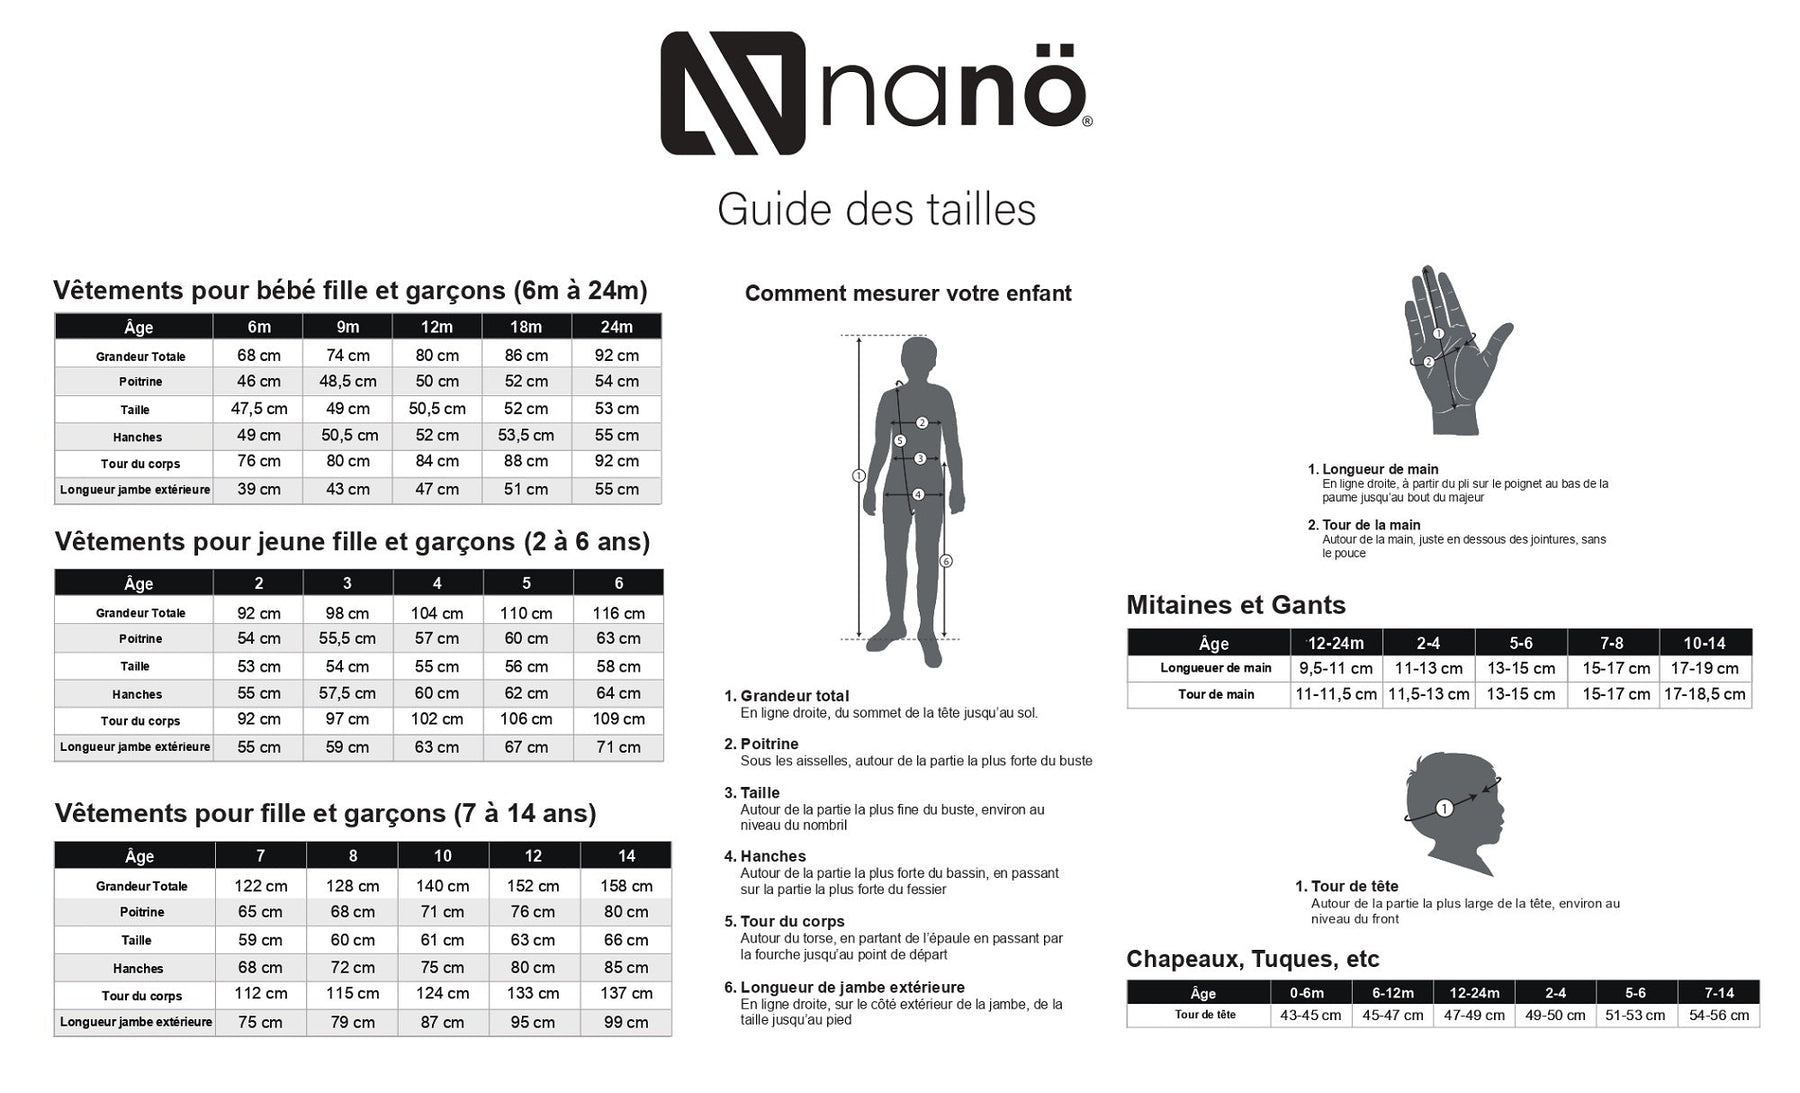 Ensemble deux-pièces micropolaire pour enfant garçon par Nanö | BUWP601-F23 Olive | Boutique Flos, vêtements mode pour bébés et enfants